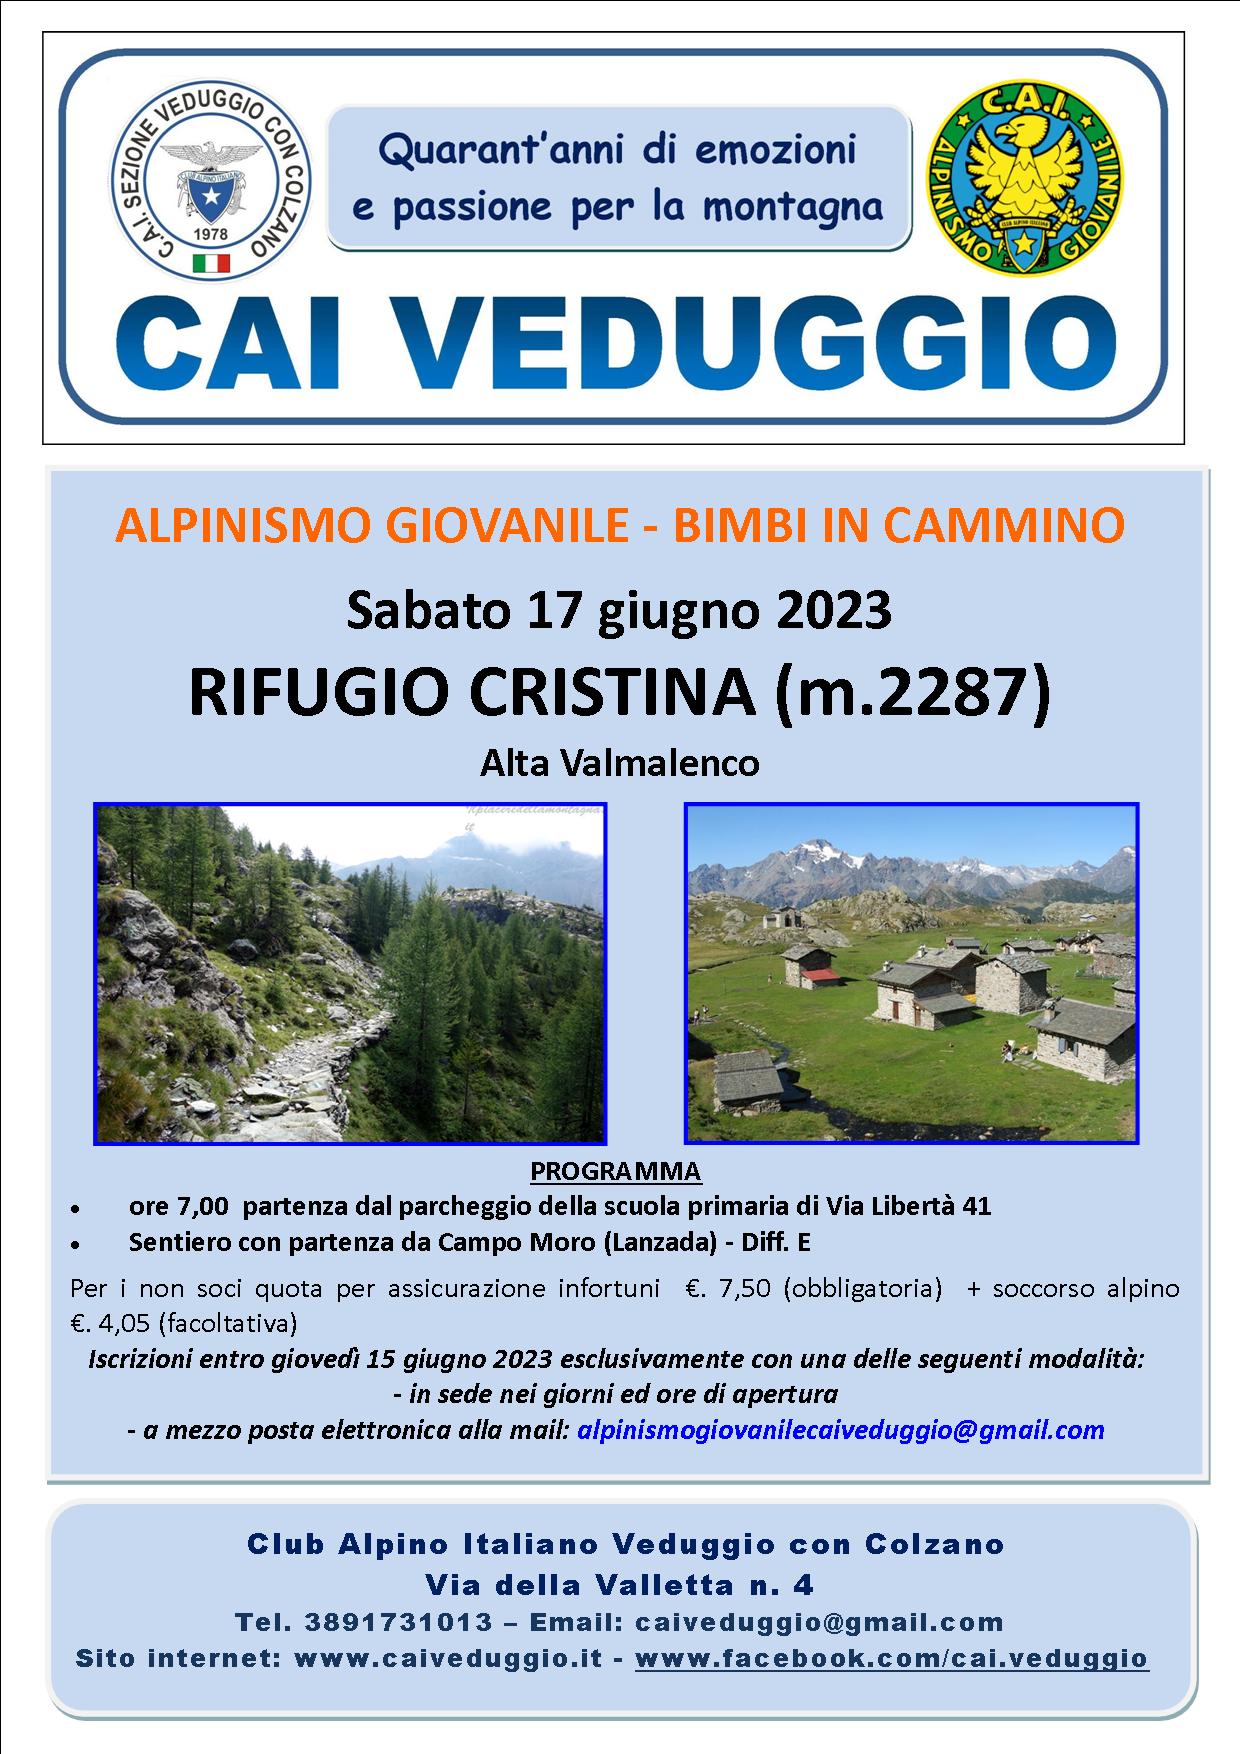 Sabato 17 giugno 2023 – Rifugio Cristina (Bimbi in cammino – Alpinismo Giovanile)